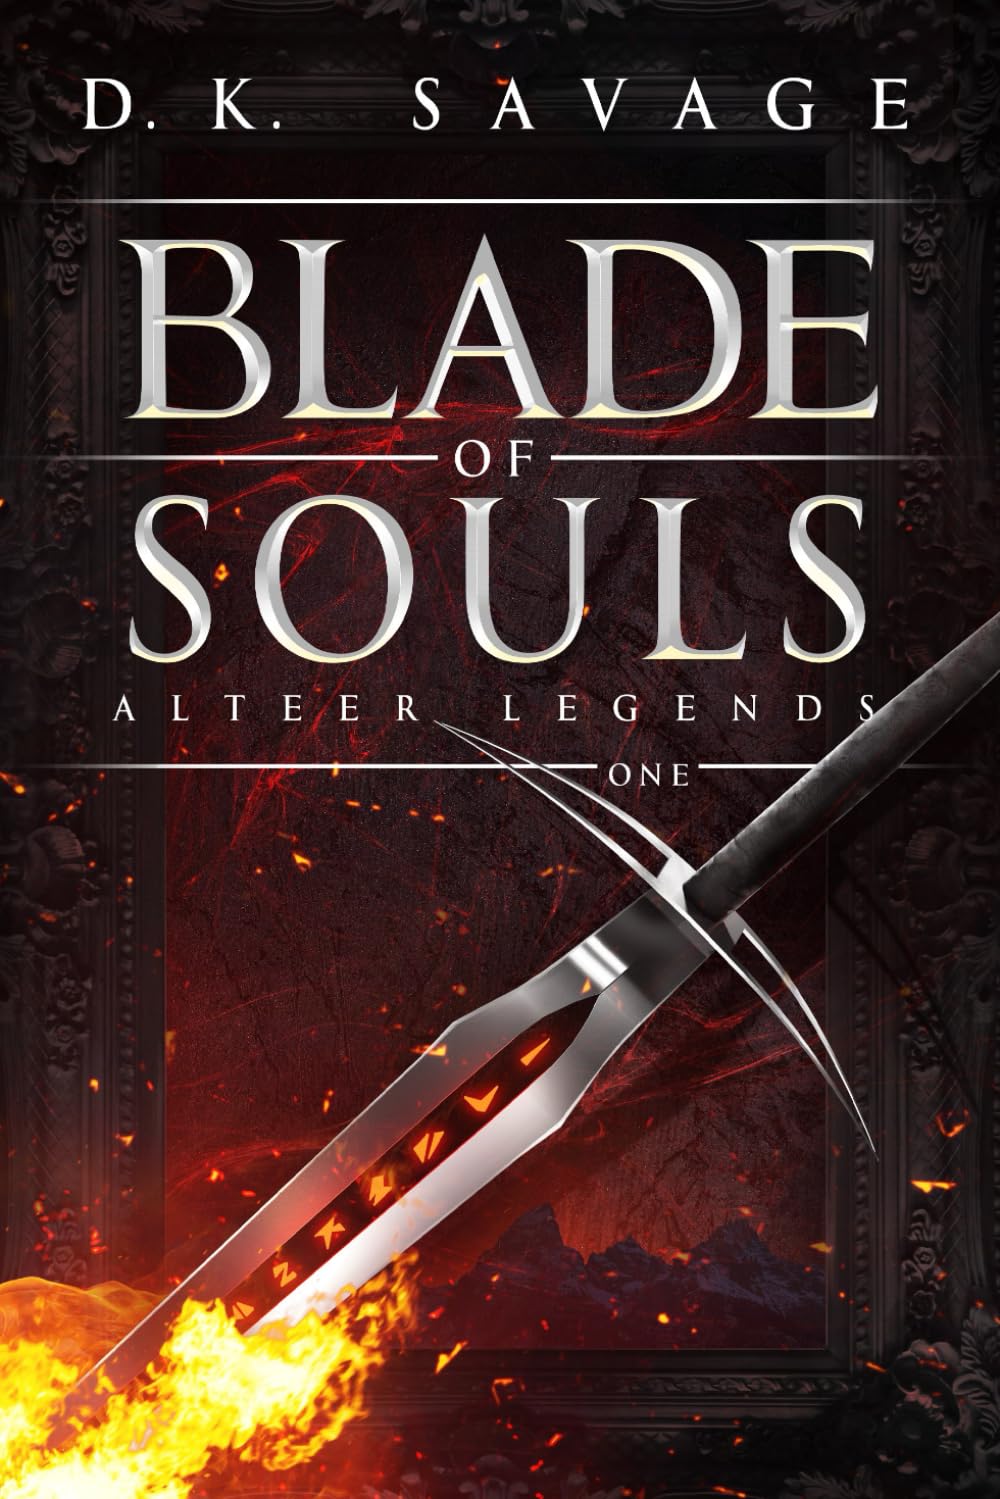 Blade of Souls by D.K. Savage